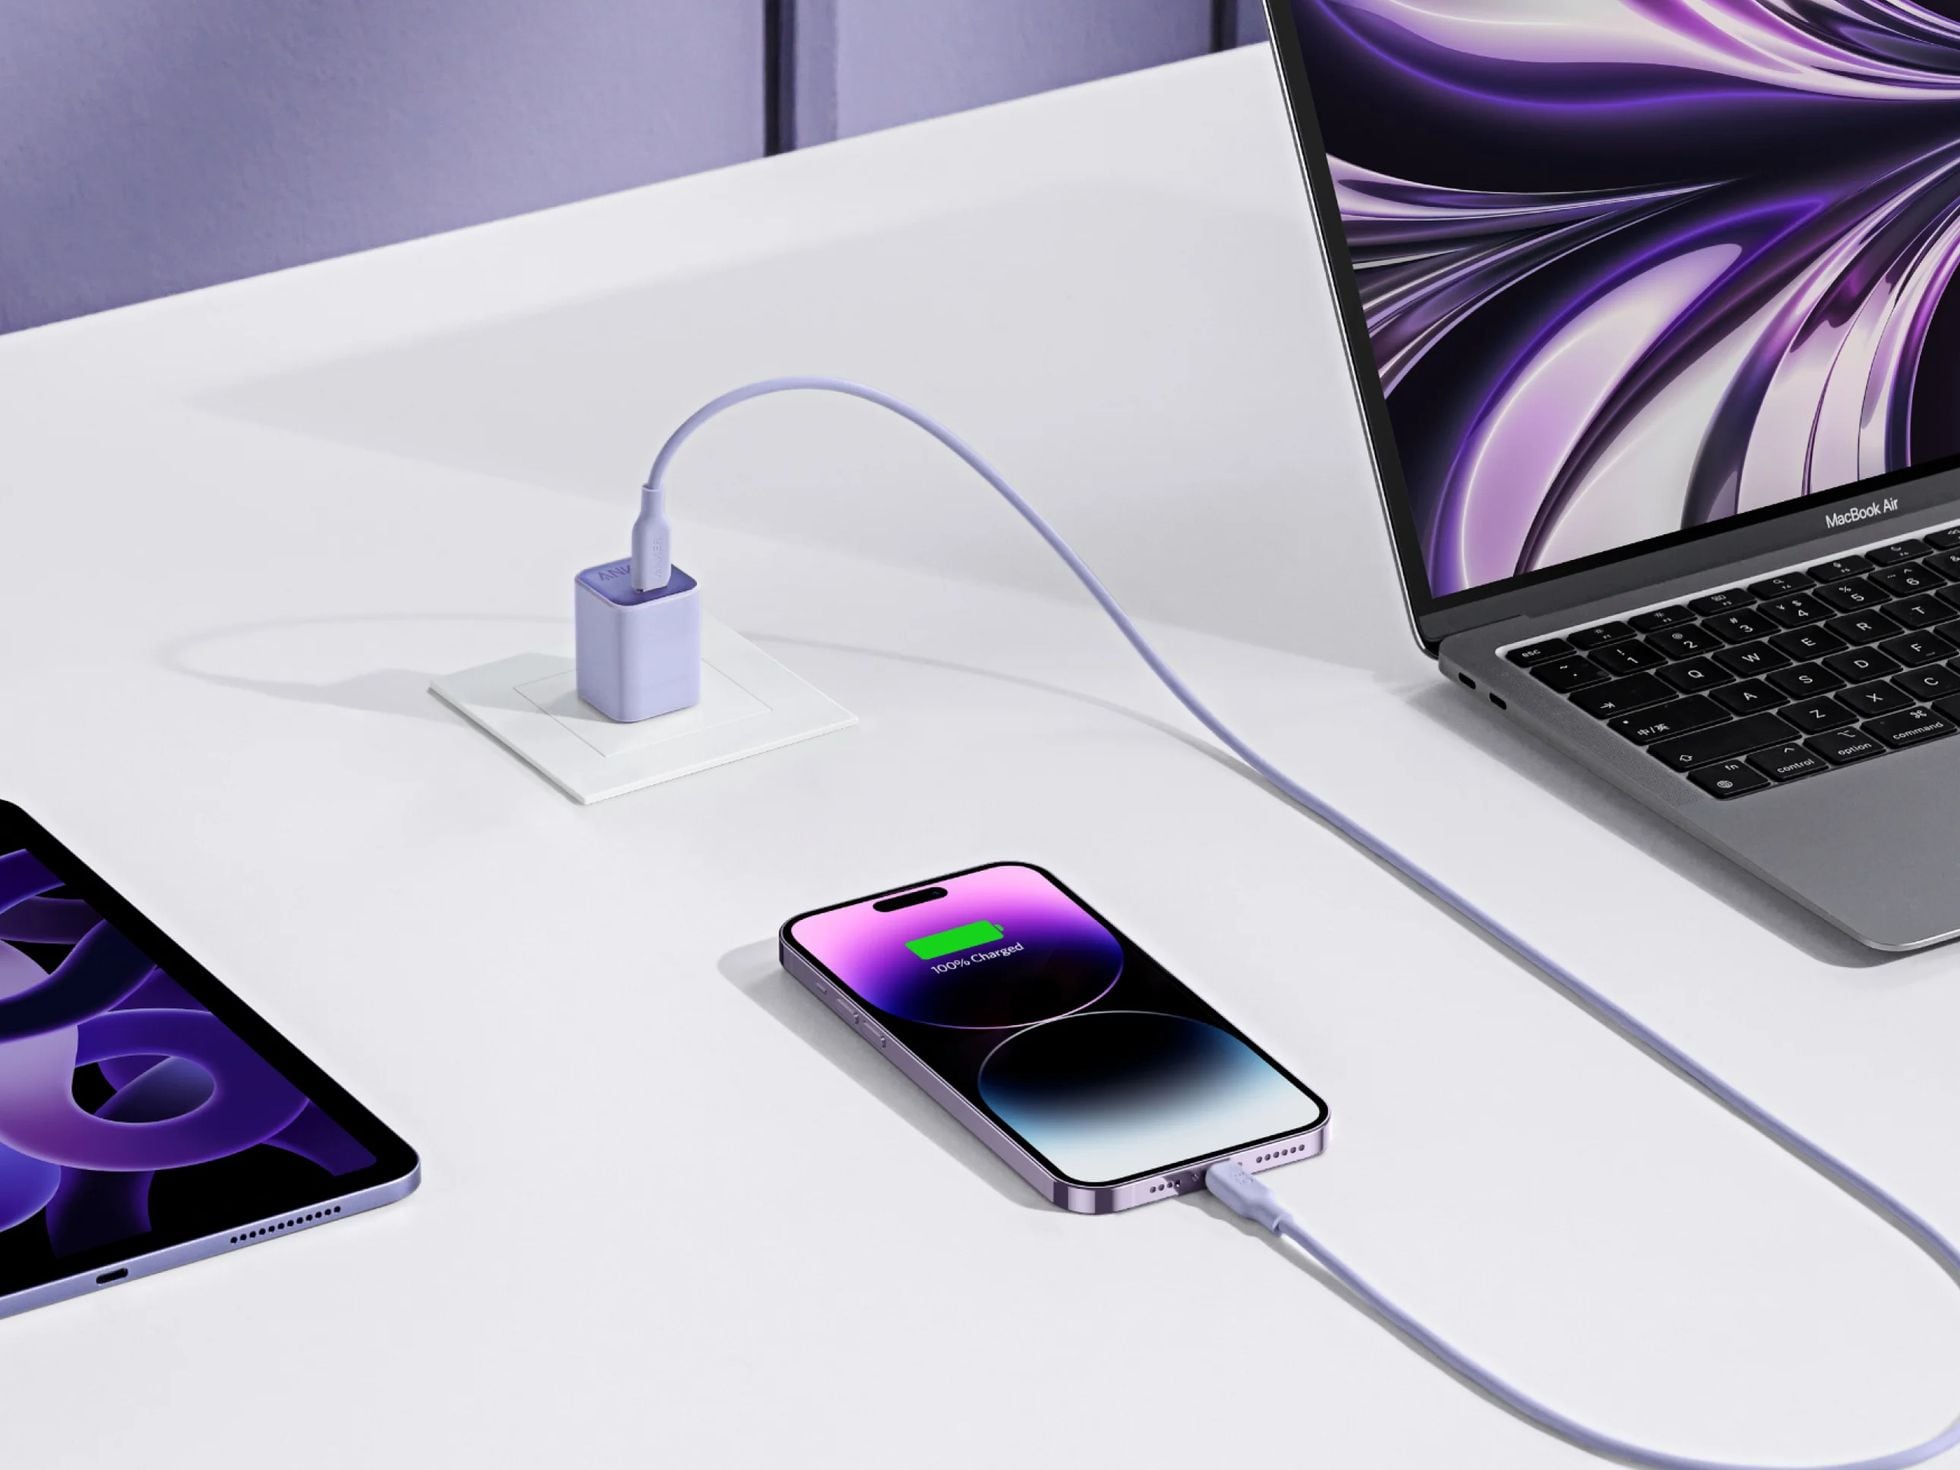 Cable usb y carga iPhone 6 - Cables USB - Los mejores precios